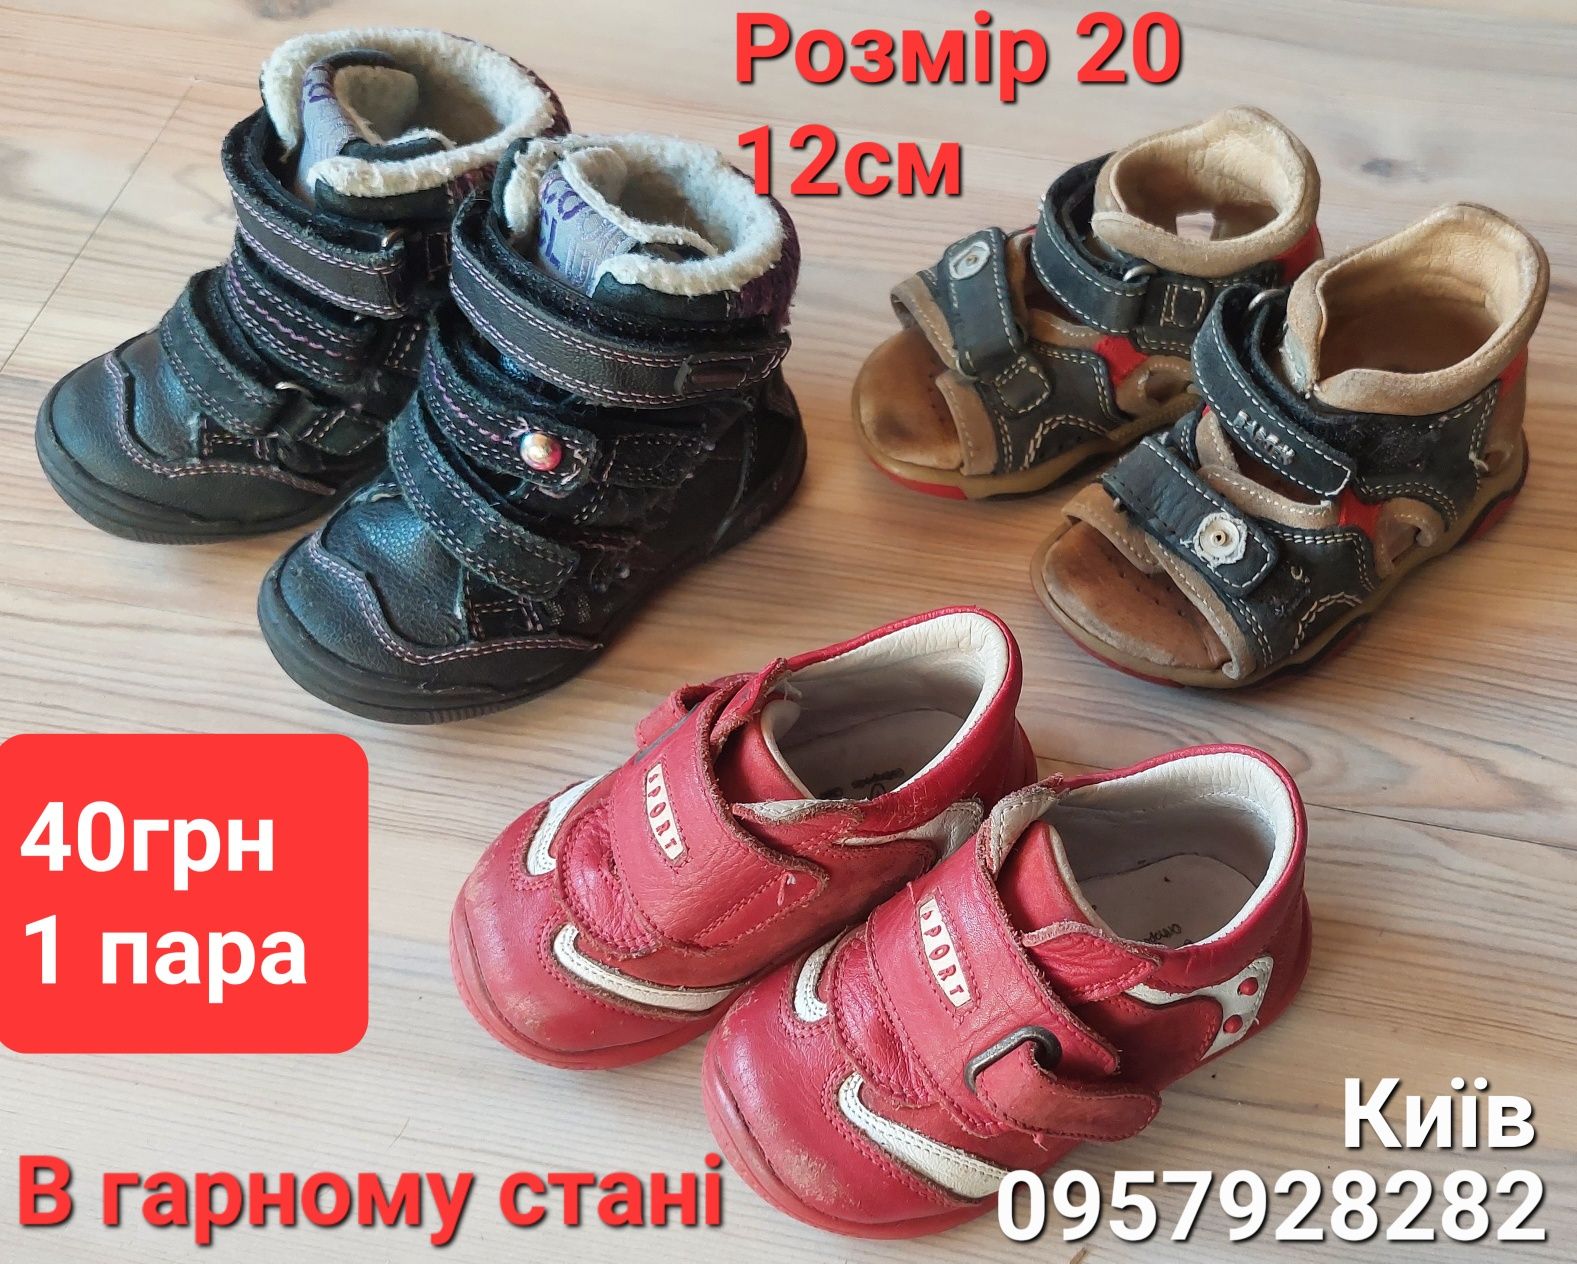 Дитяче взуття розміром  20- 30